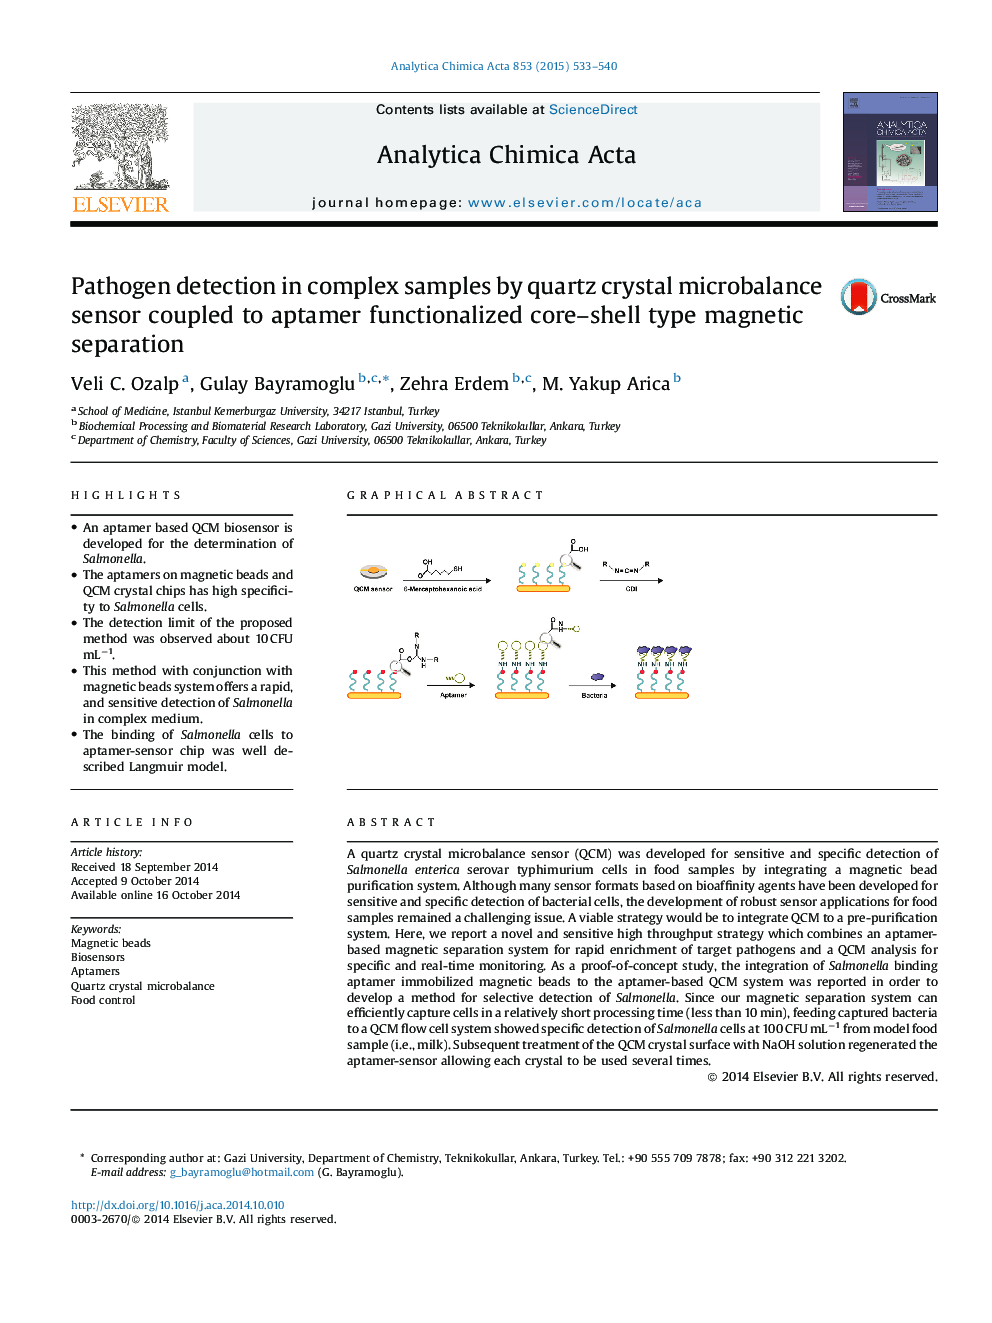 تشخیص پاتوژن در نمونه های پیچیده با استفاده از سنسور میکروالیبال کریستال کوارتز همراه با اپلامر عامل جداسازی مغناطیسی 